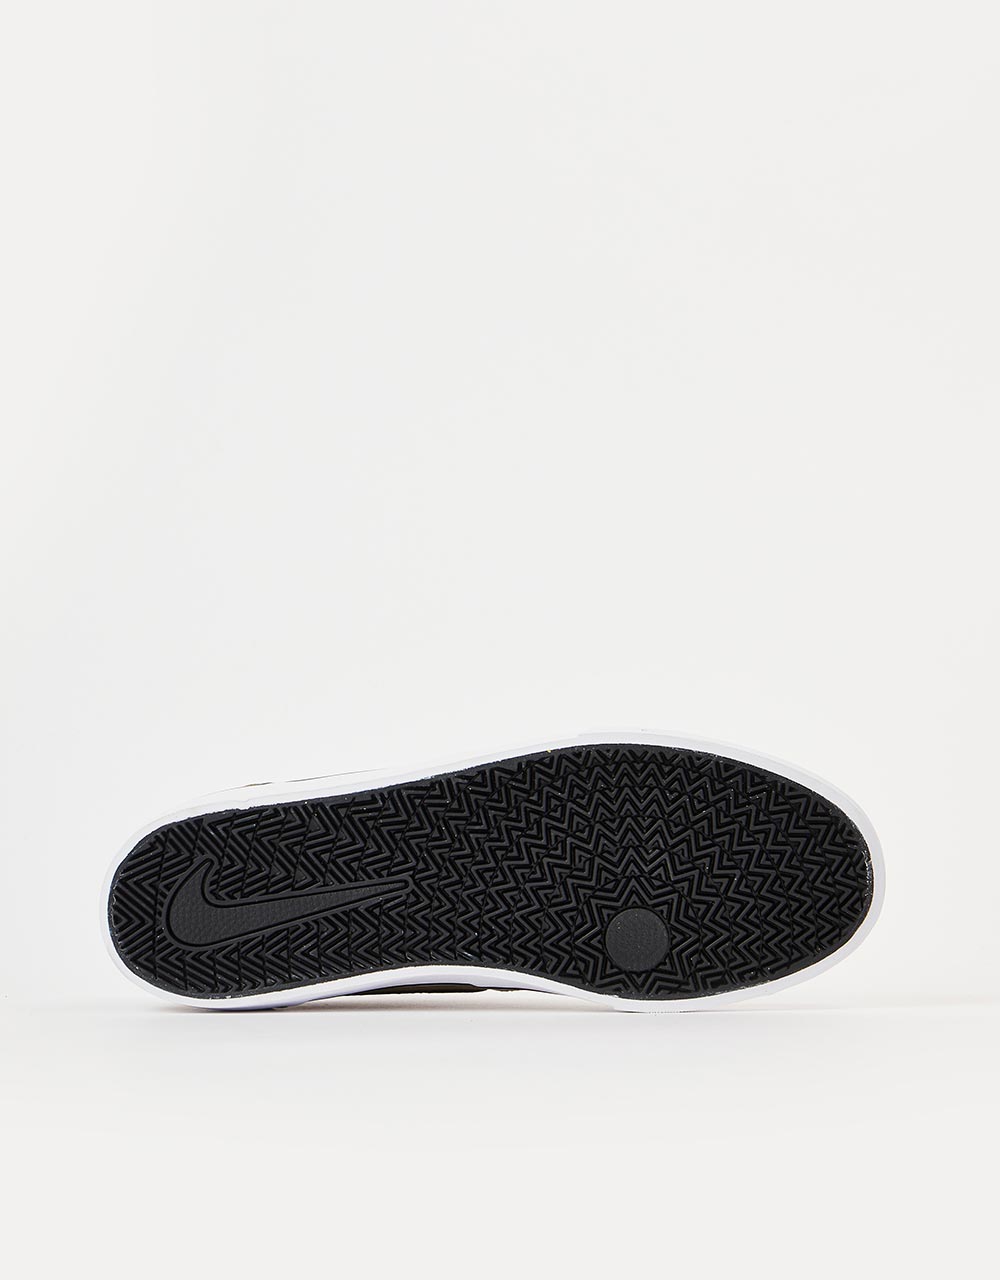 Nike SB Chron 2 Canvas Skate Shoes - Pilgrim/Black-Pilgrim-White